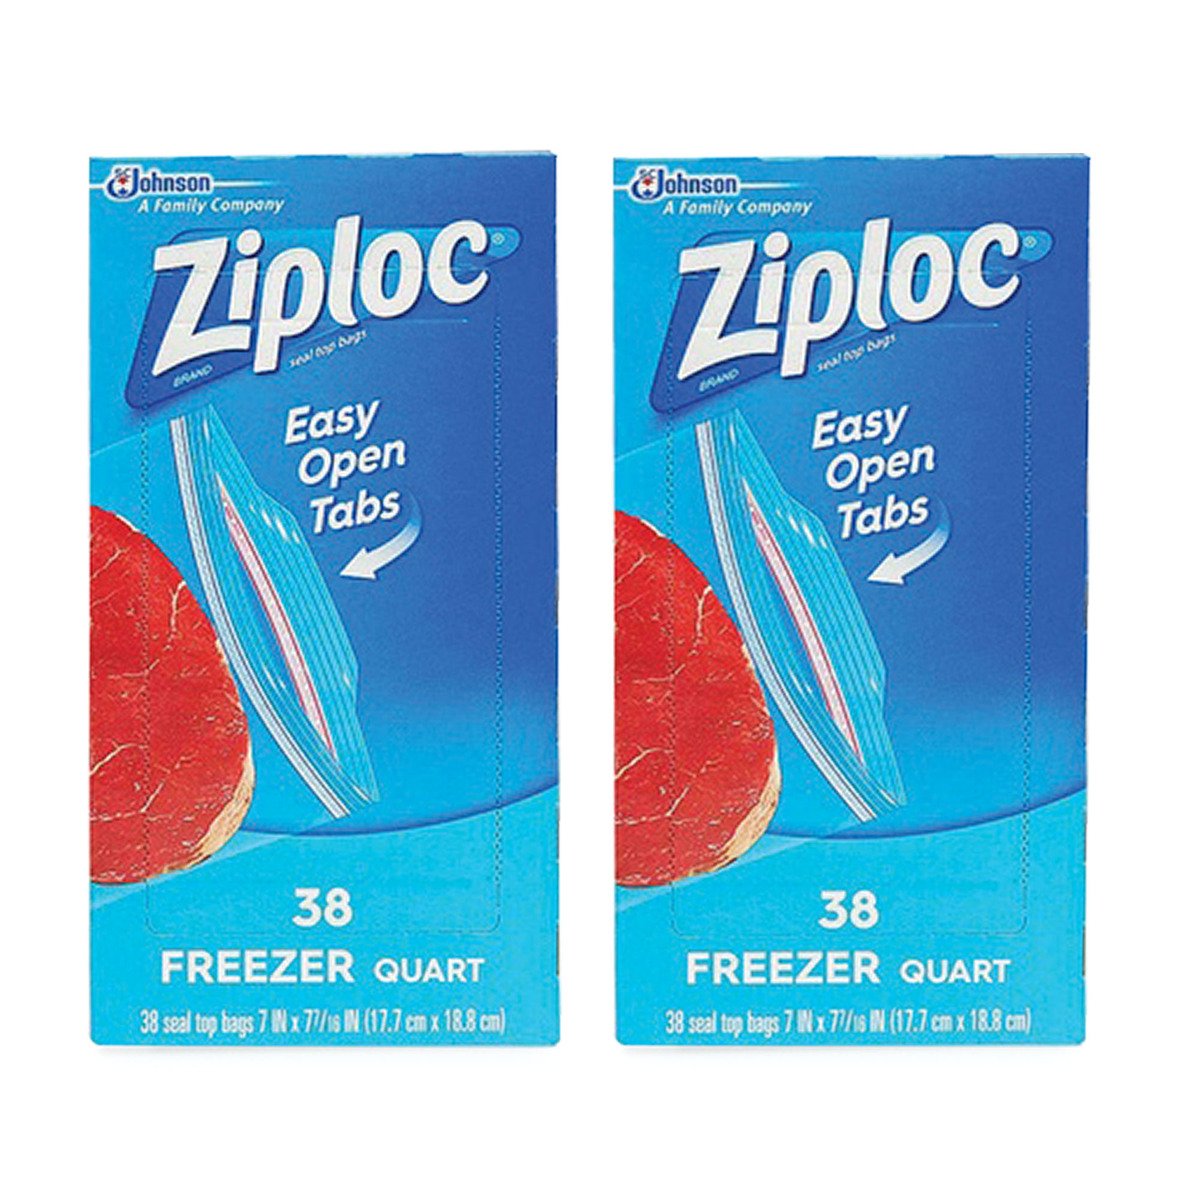 Buy Ziploc Freezer Seal Top Bags Value Pack 2 x 38 pcs Online at Best Price | Food Bags | Lulu UAE in UAE